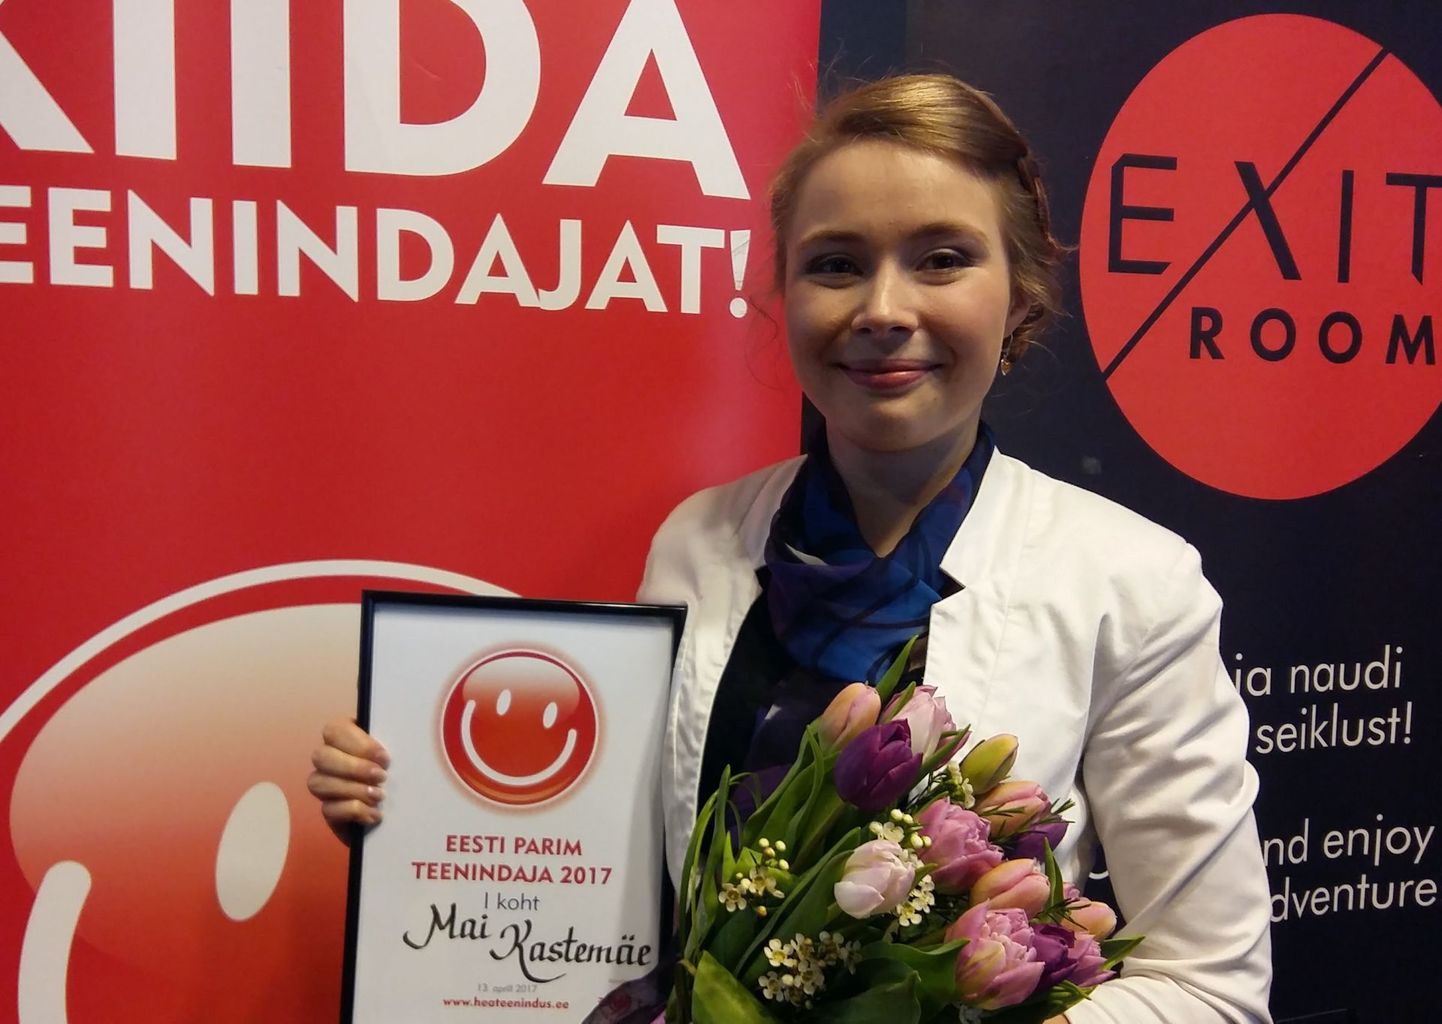 Eesti parim teenindaja 2017 Mai Kastemäe.